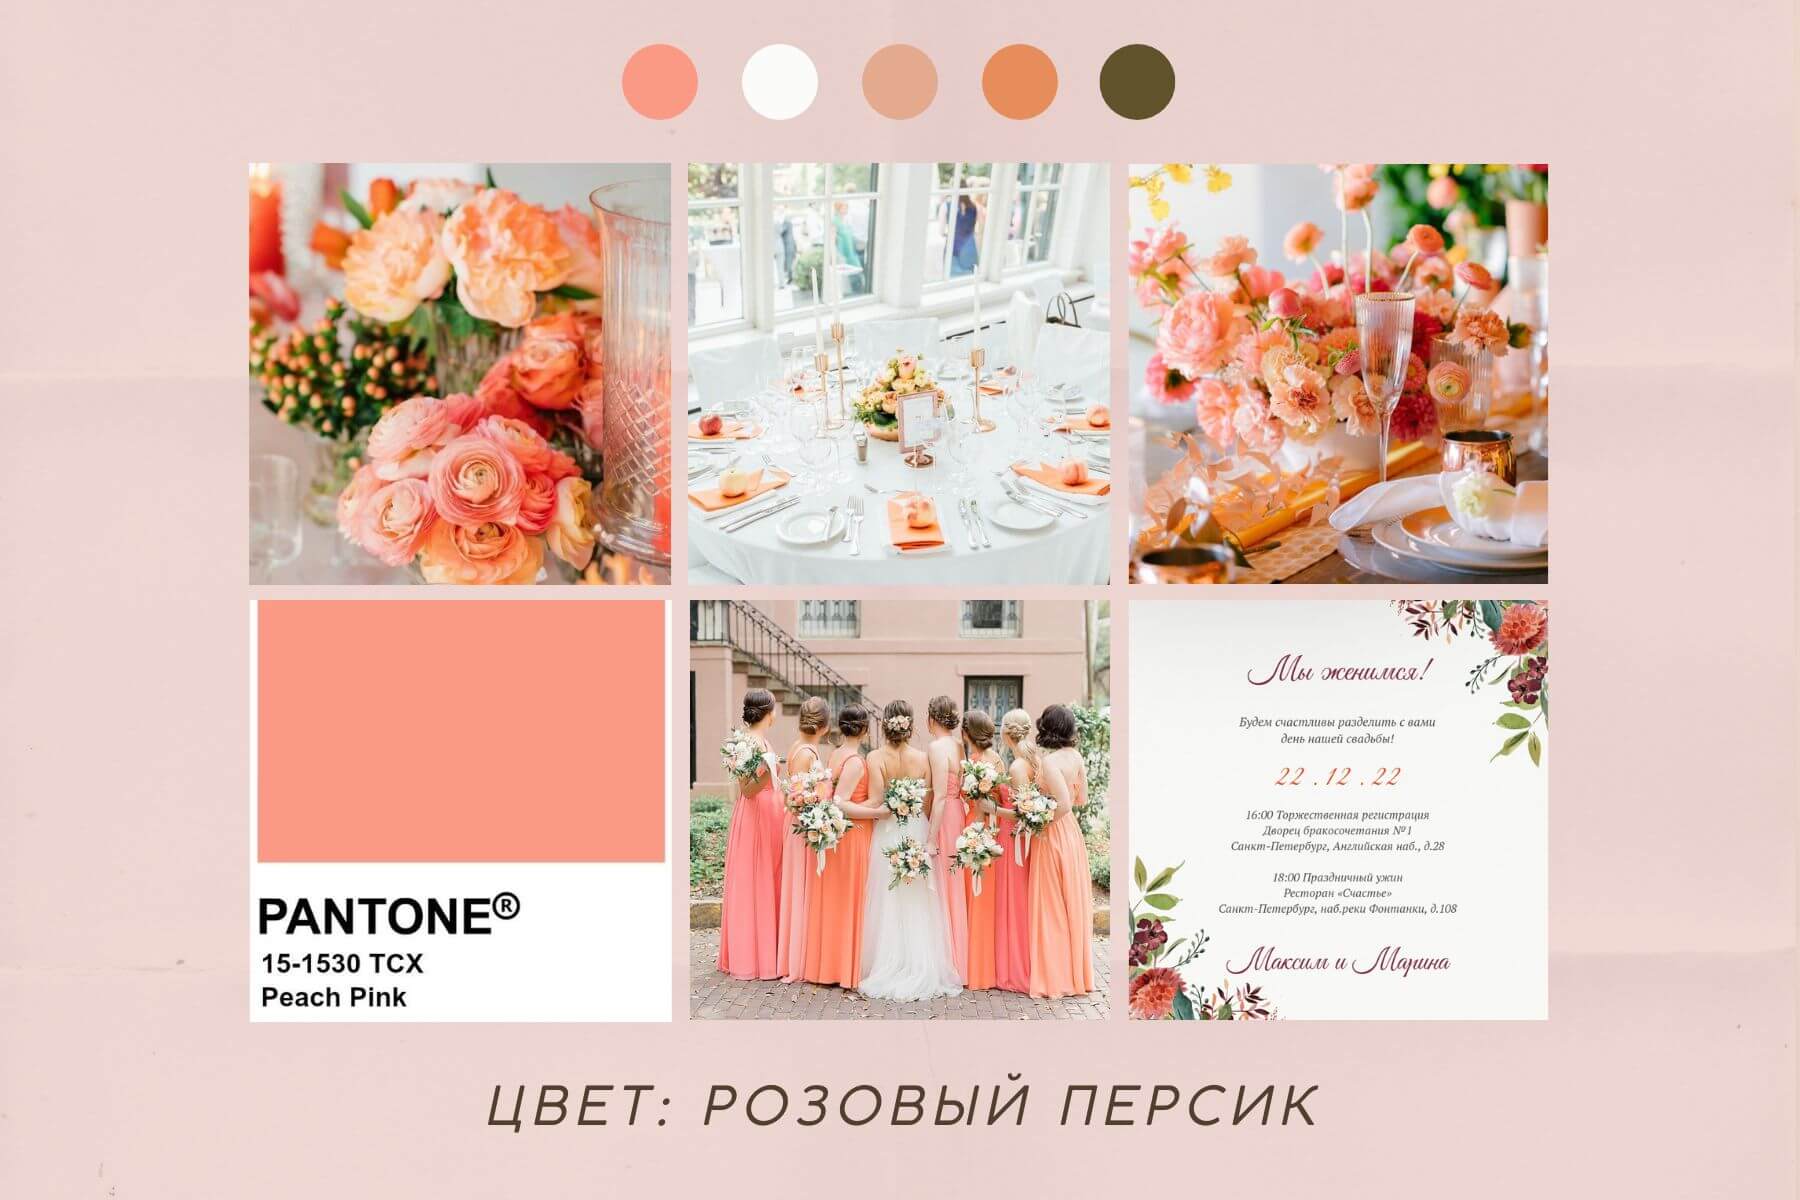 Персиковая свадьба и персиковые приглашения на свадьбу, цвет Peach Pink